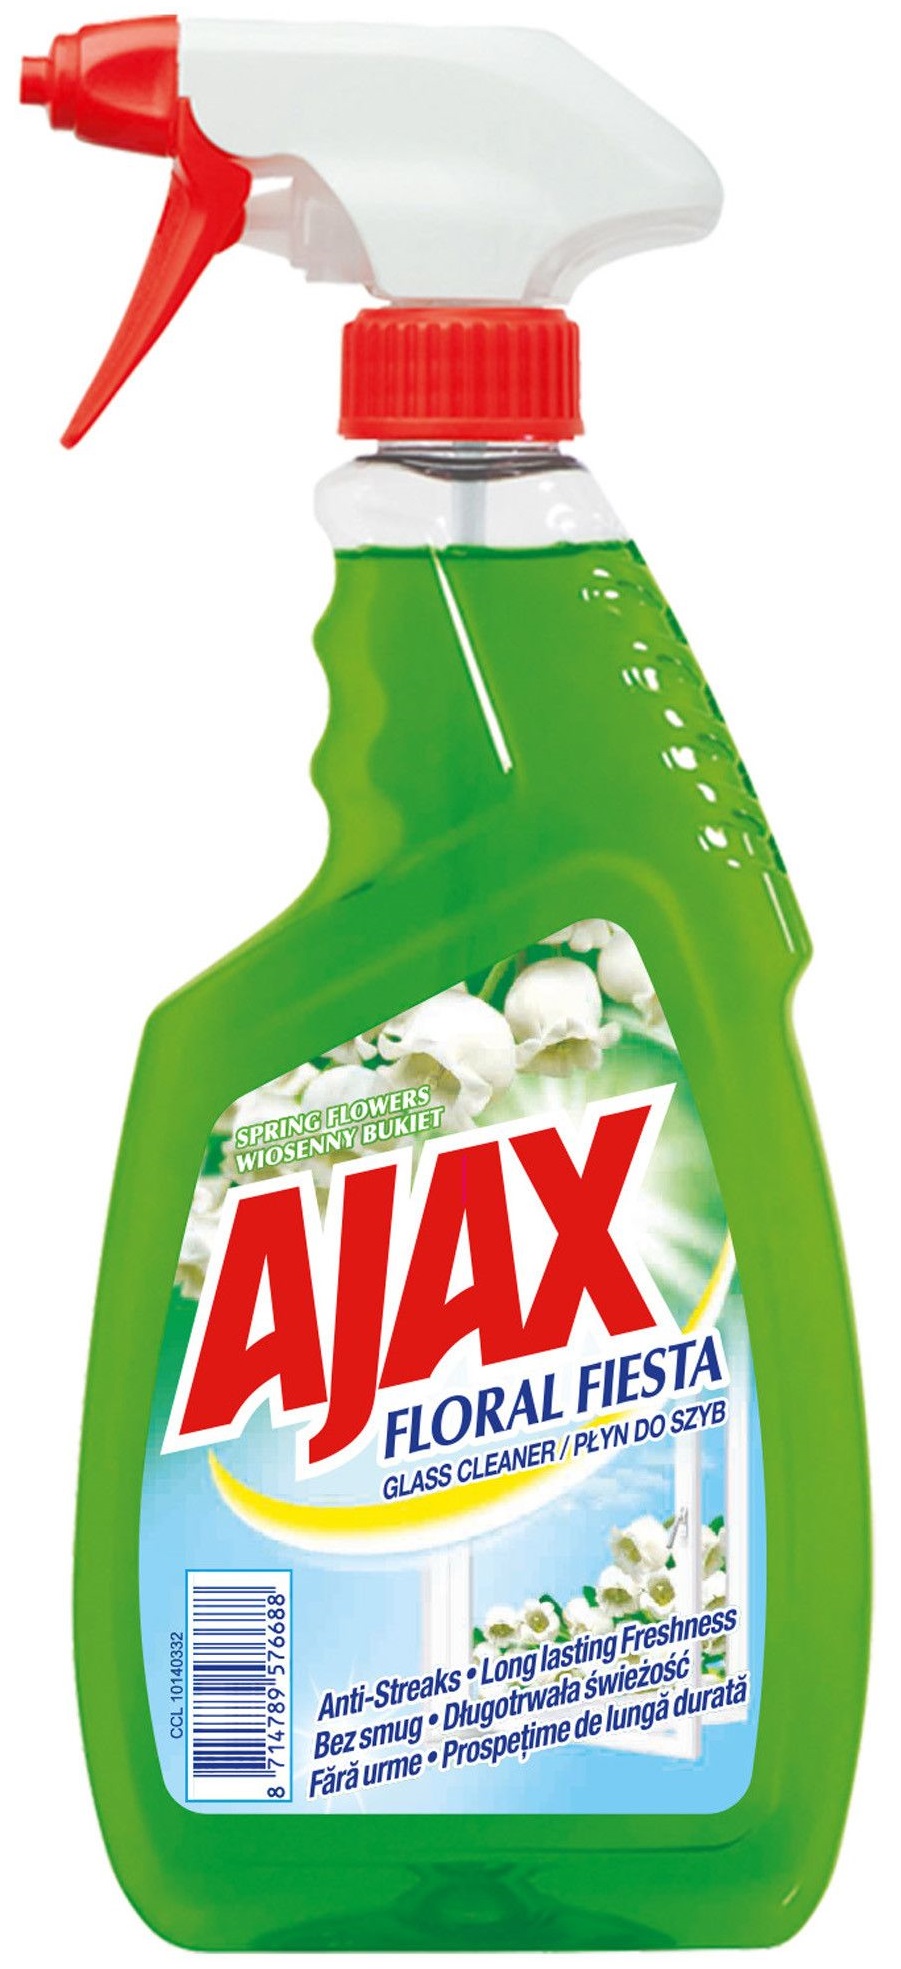 Detergent geamuri AJAX Spring Flowers, 500ml